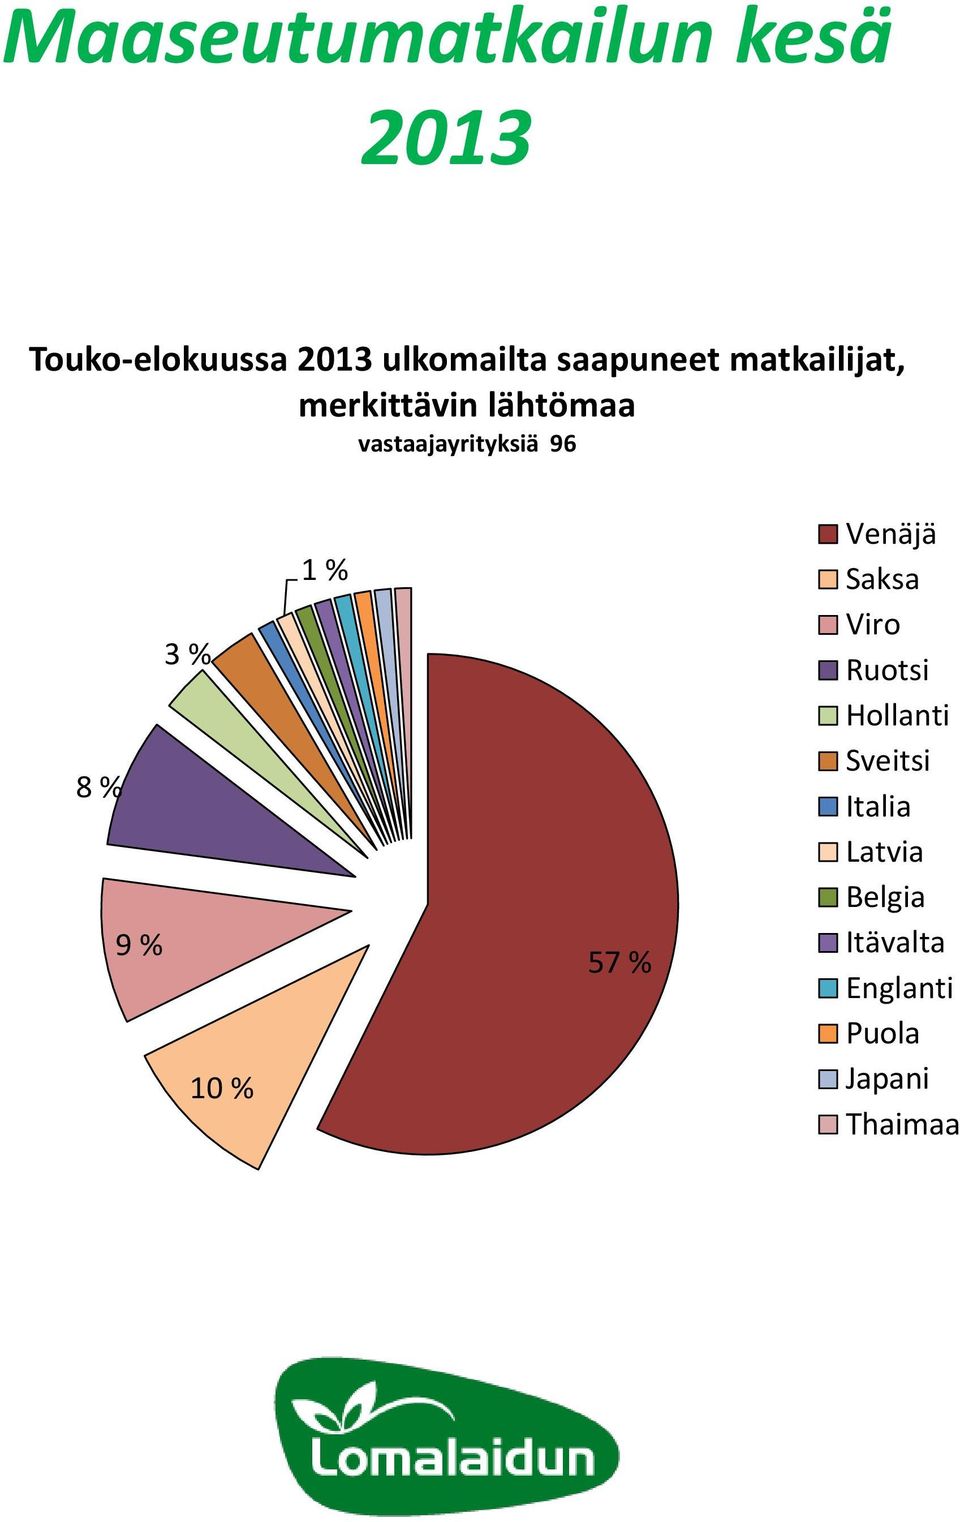 96 3 % 8 % 9 % 10 % 1 % 57 % Venäjä Saksa Viro Ruotsi Hollanti